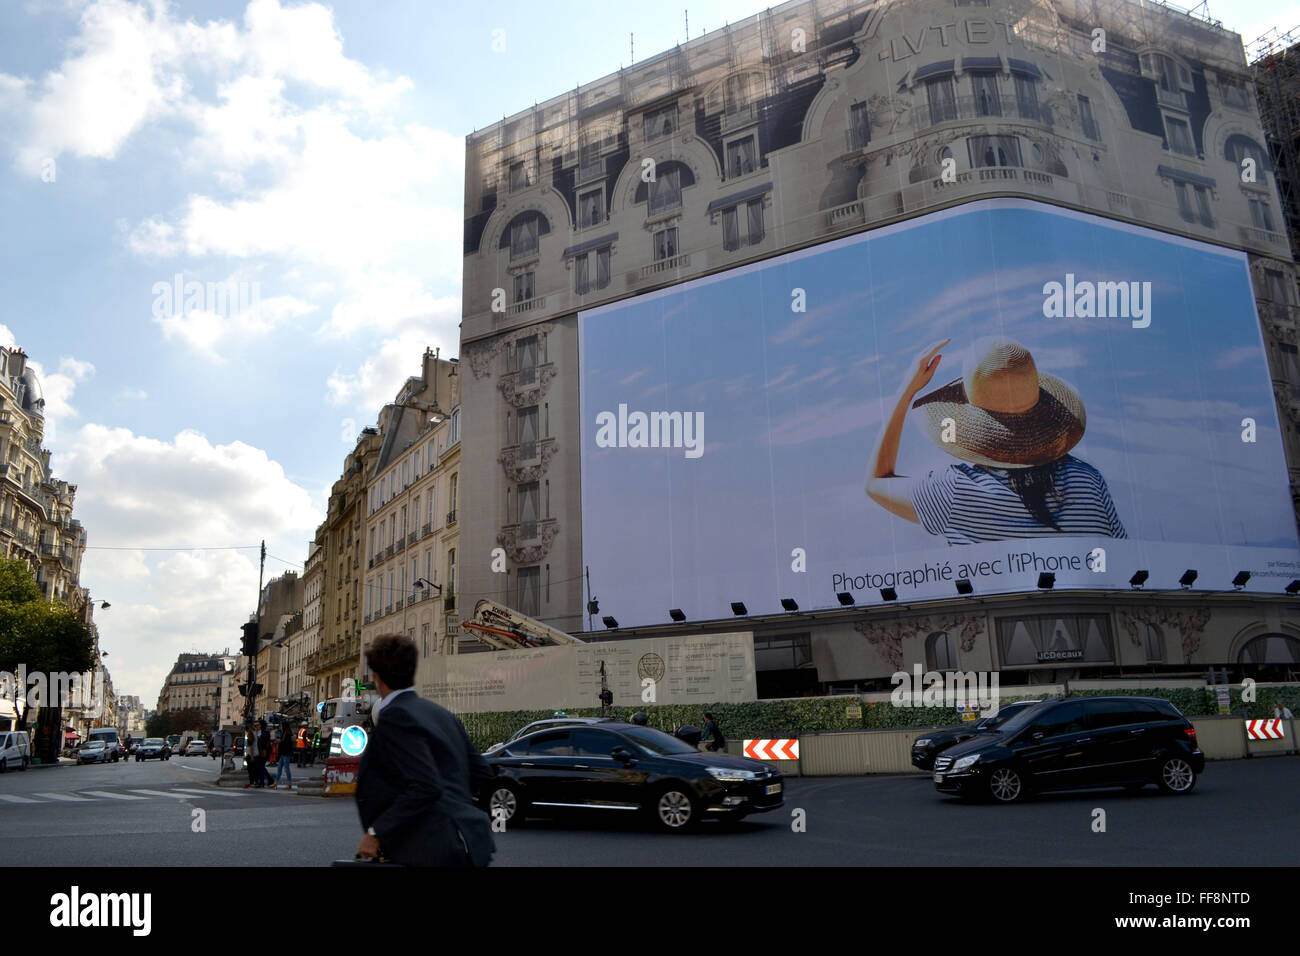 Un enorme cartel en París muestra la calidad de la fotografía con un iPhone. Foto de stock